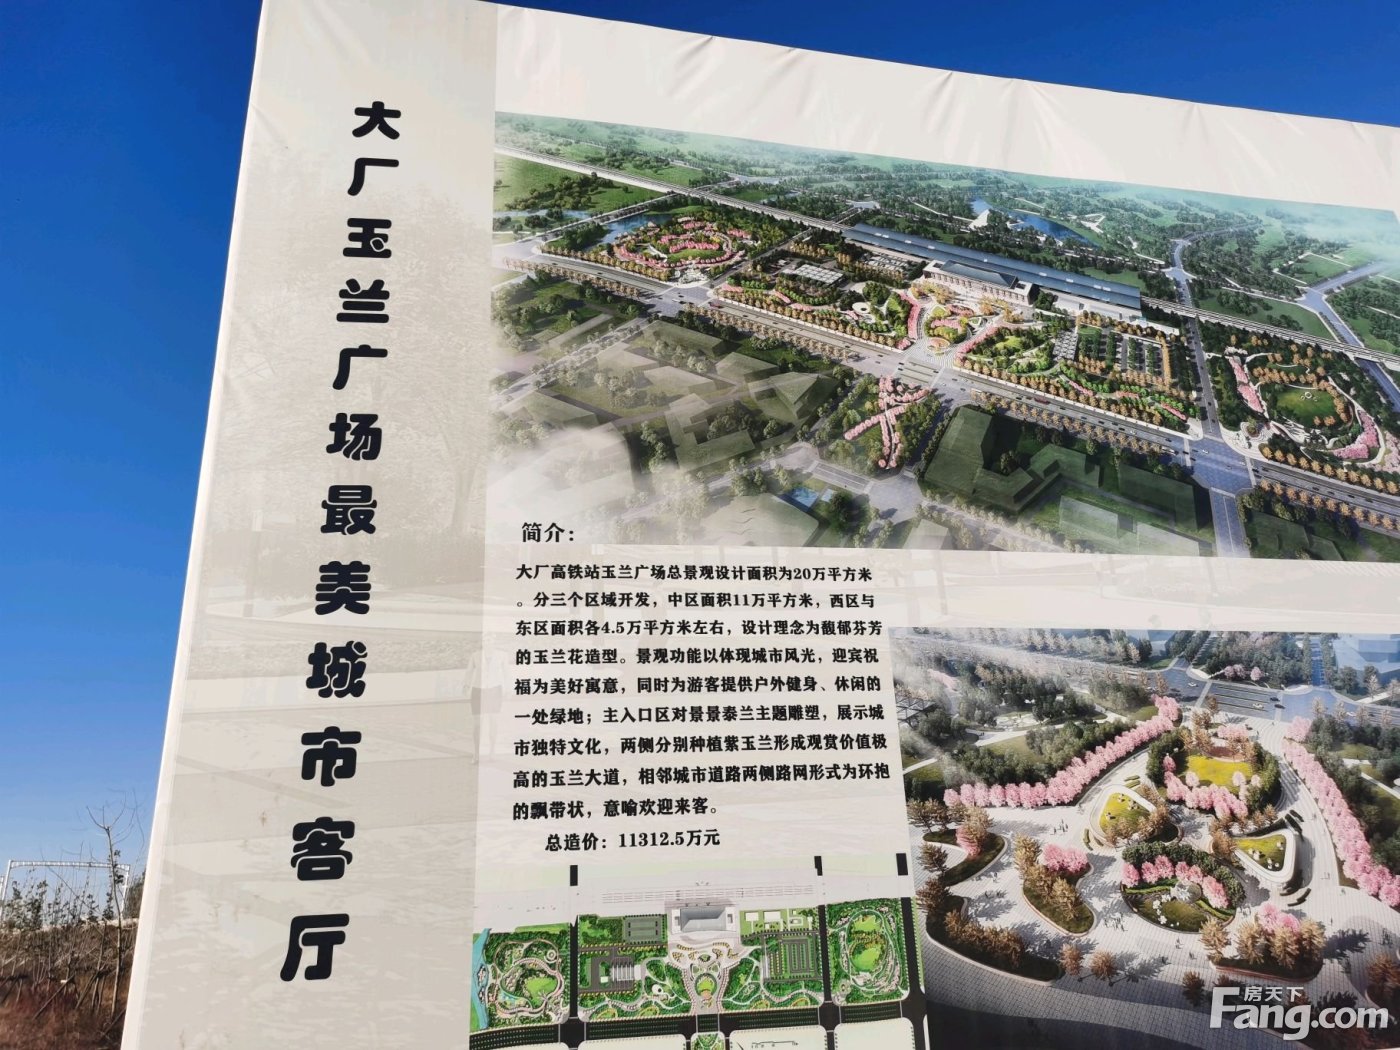 周边配套:京唐城际铁路,大厂站玉兰广场在建中,公示牌已公示孔雀城